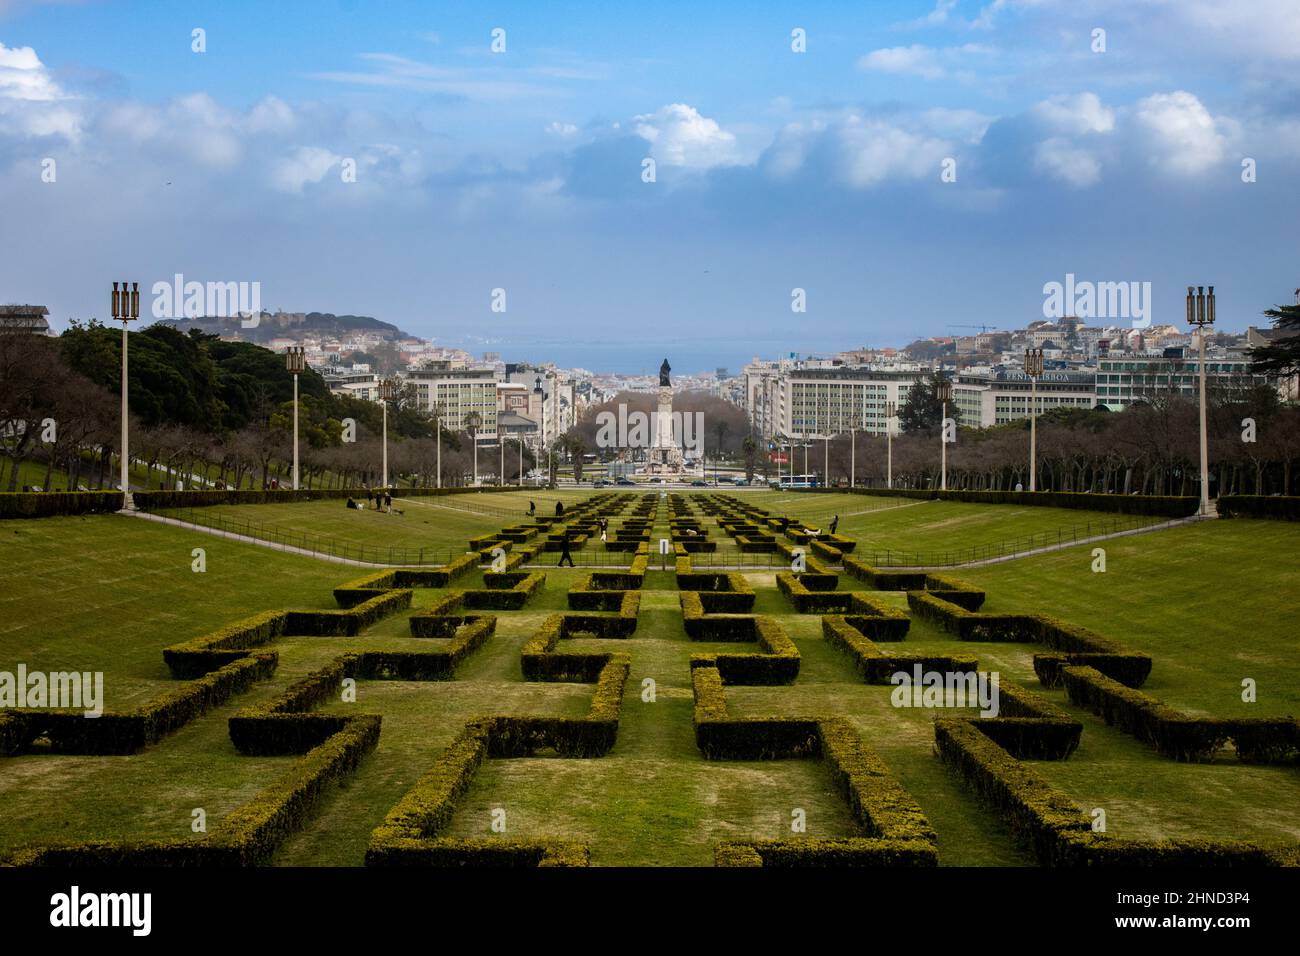 Miradouro à Lisbonne - Pont d'observation Parc Eduardo VII avec vue panoramique sur Lisbonne et un labyrinthe dans le parc Banque D'Images